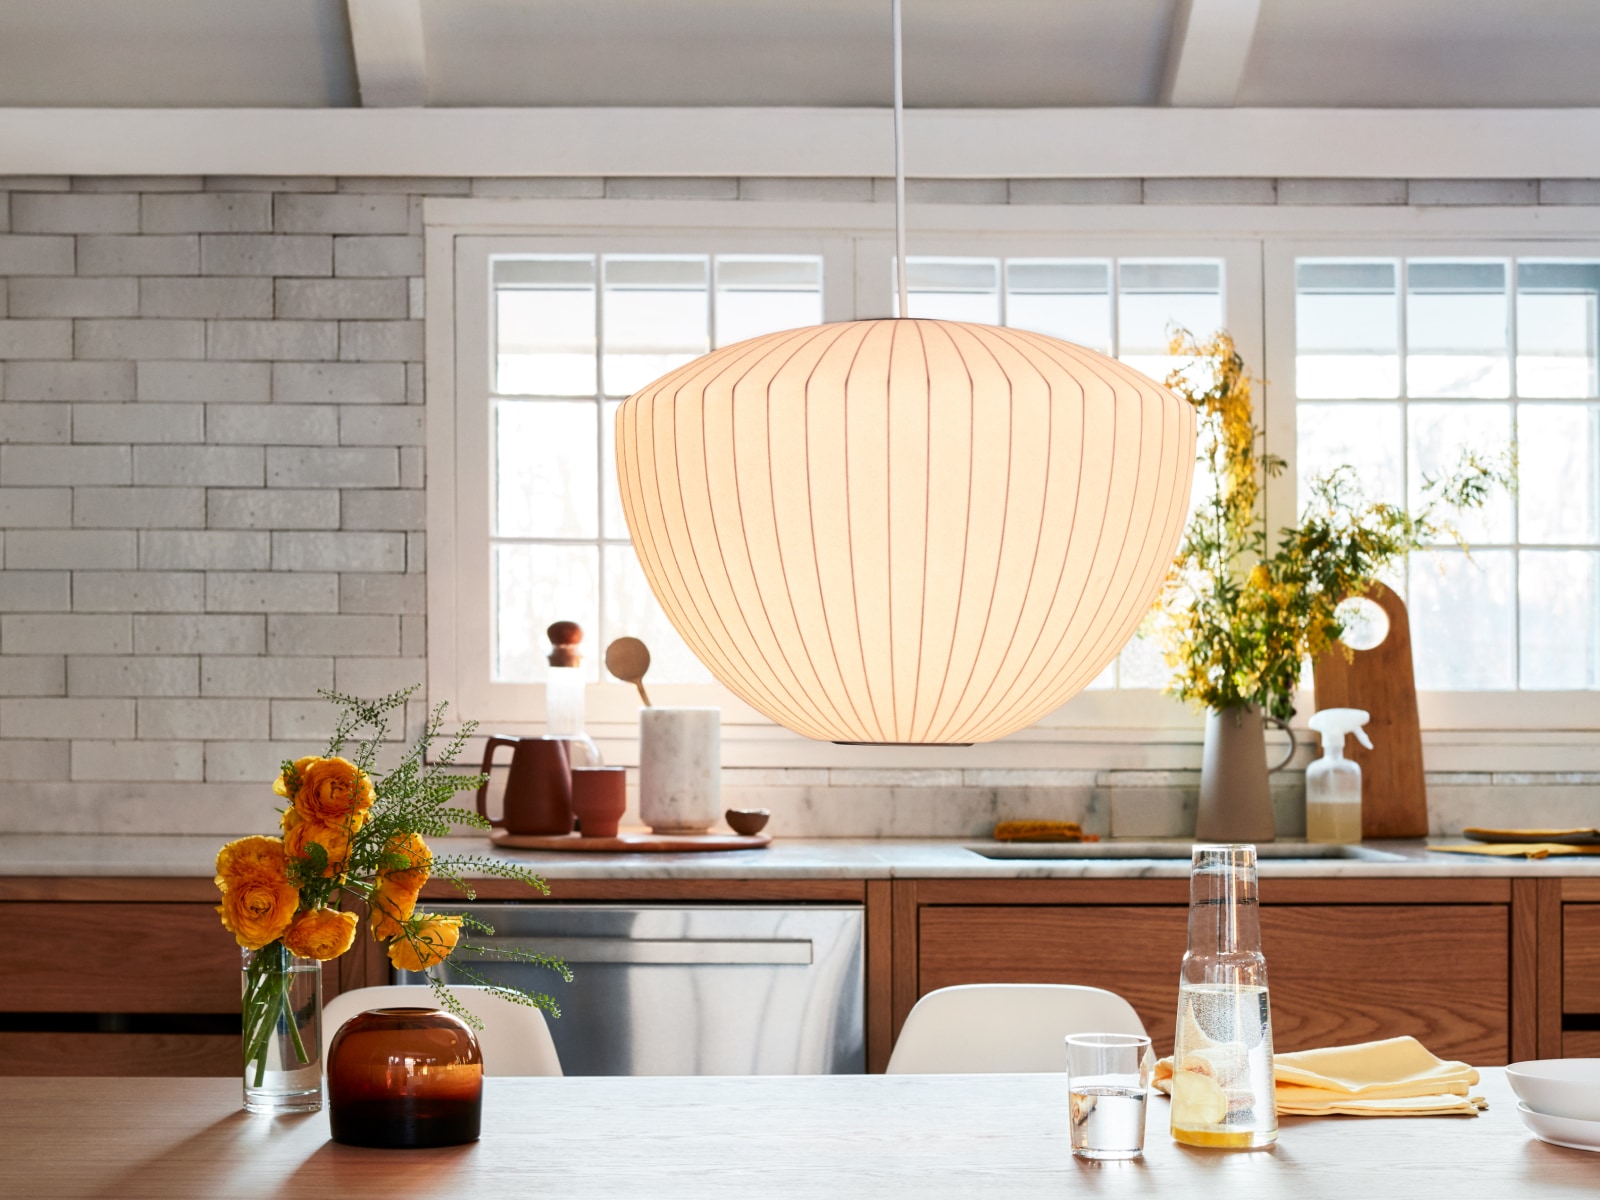 Um pendente Nelson Apple Bubble exibido em um ambiente de cozinha.